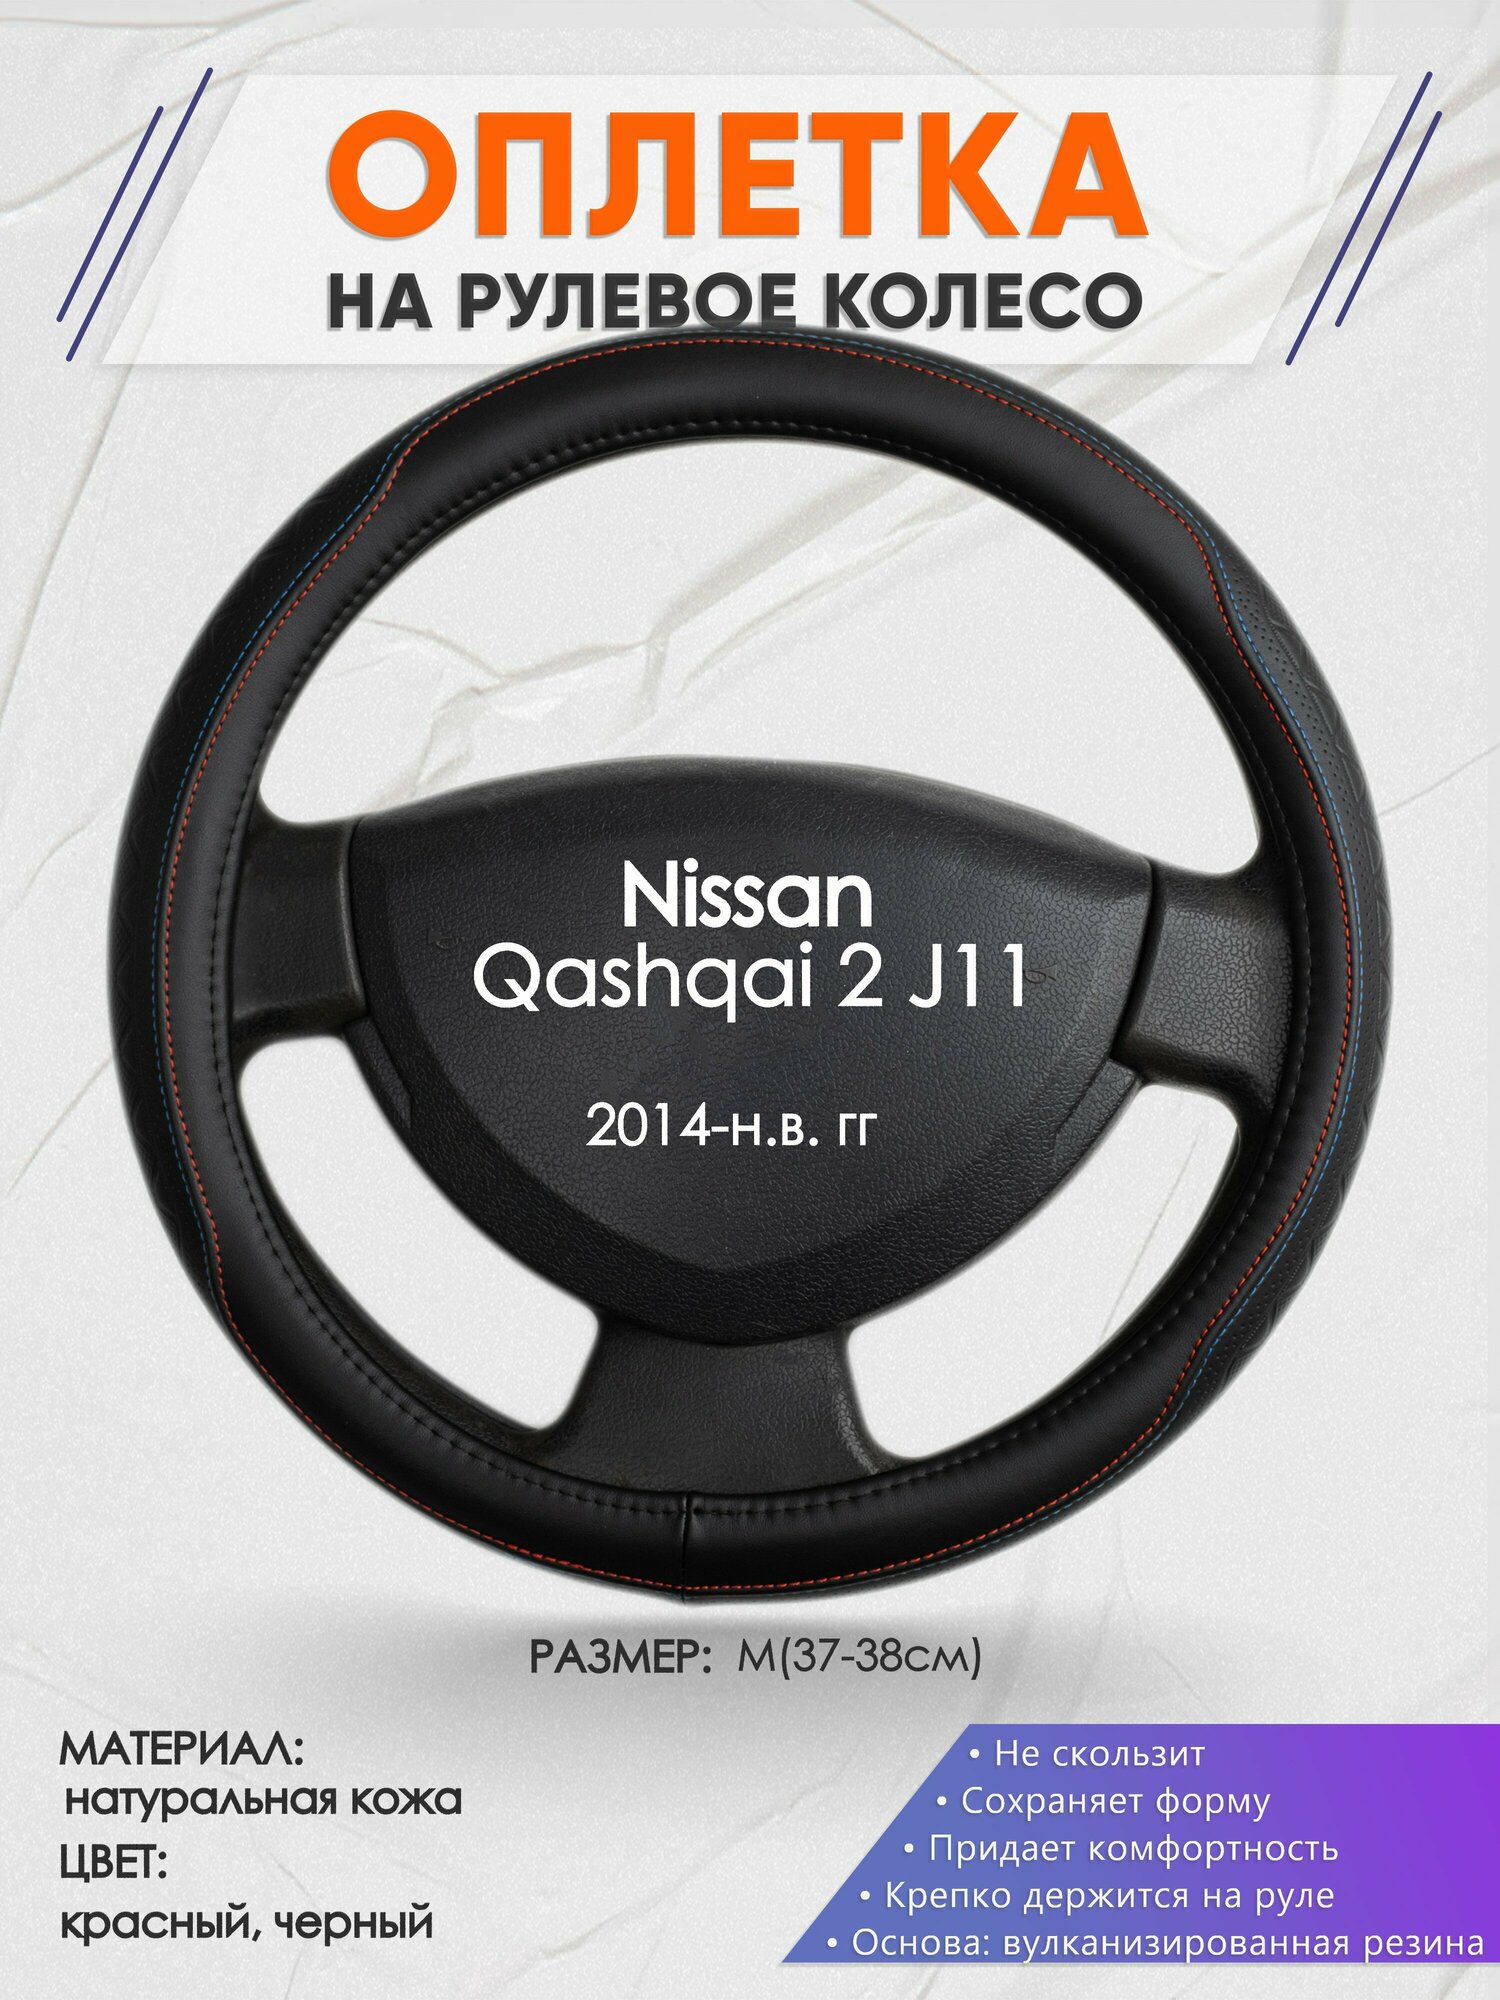 Оплетка на руль для Nissan Qashqai 2 J11(Ниссан Кашкай 2) 2014-н. в, M(37-38см), Натуральная кожа 89